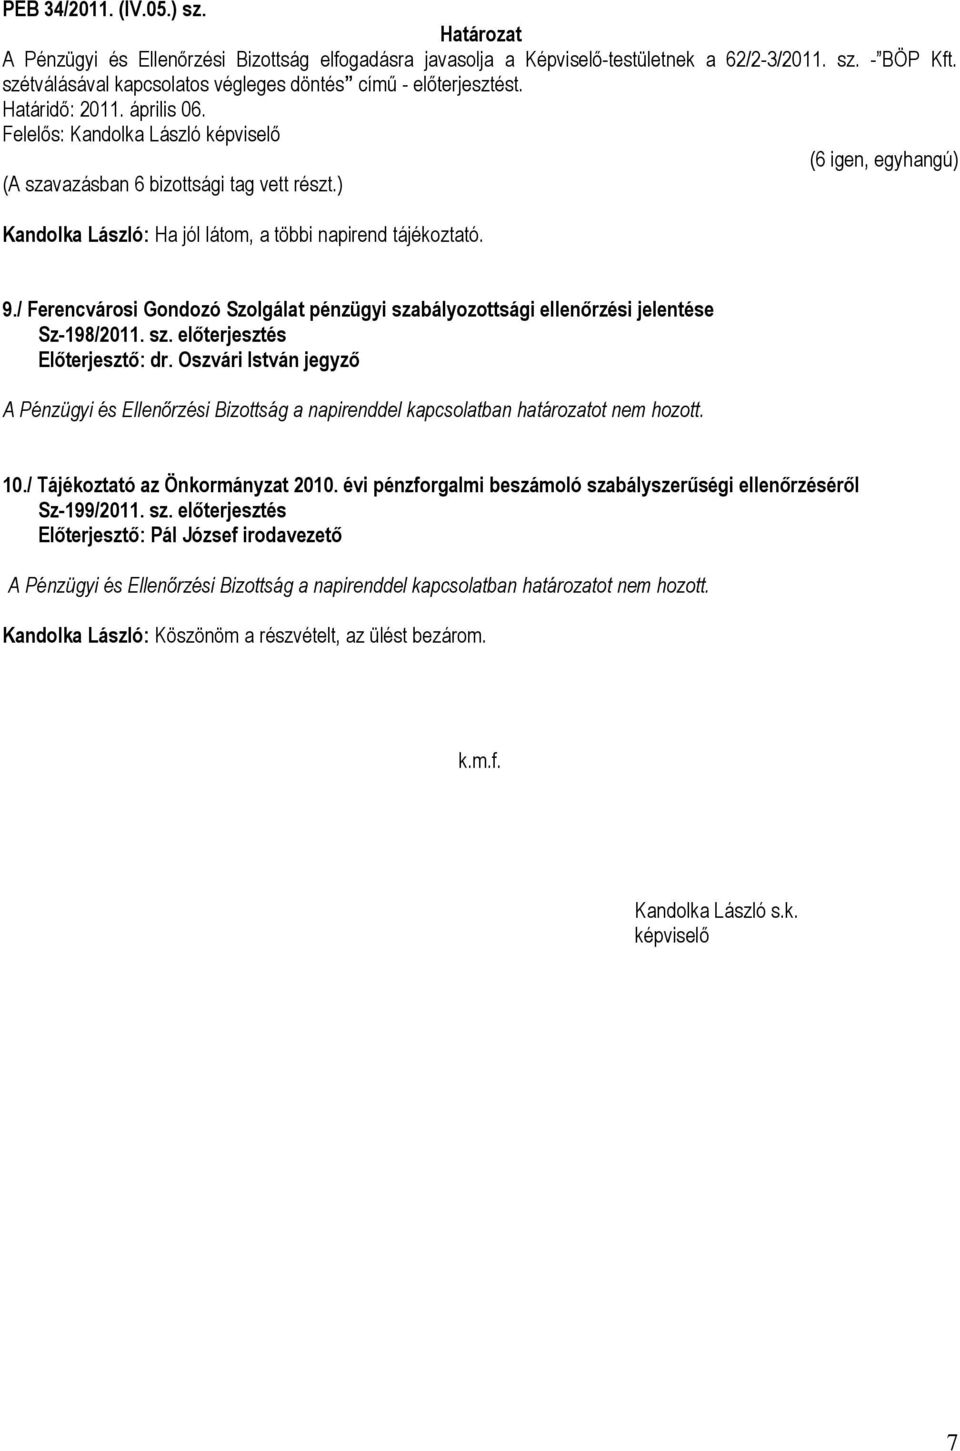 / Ferencvárosi Gondozó Szolgálat pénzügyi szabályozottsági ellenőrzési jelentése Sz-198/2011. sz. előterjesztés A Pénzügyi és Ellenőrzési Bizottság a napirenddel kapcsolatban határozatot nem hozott.